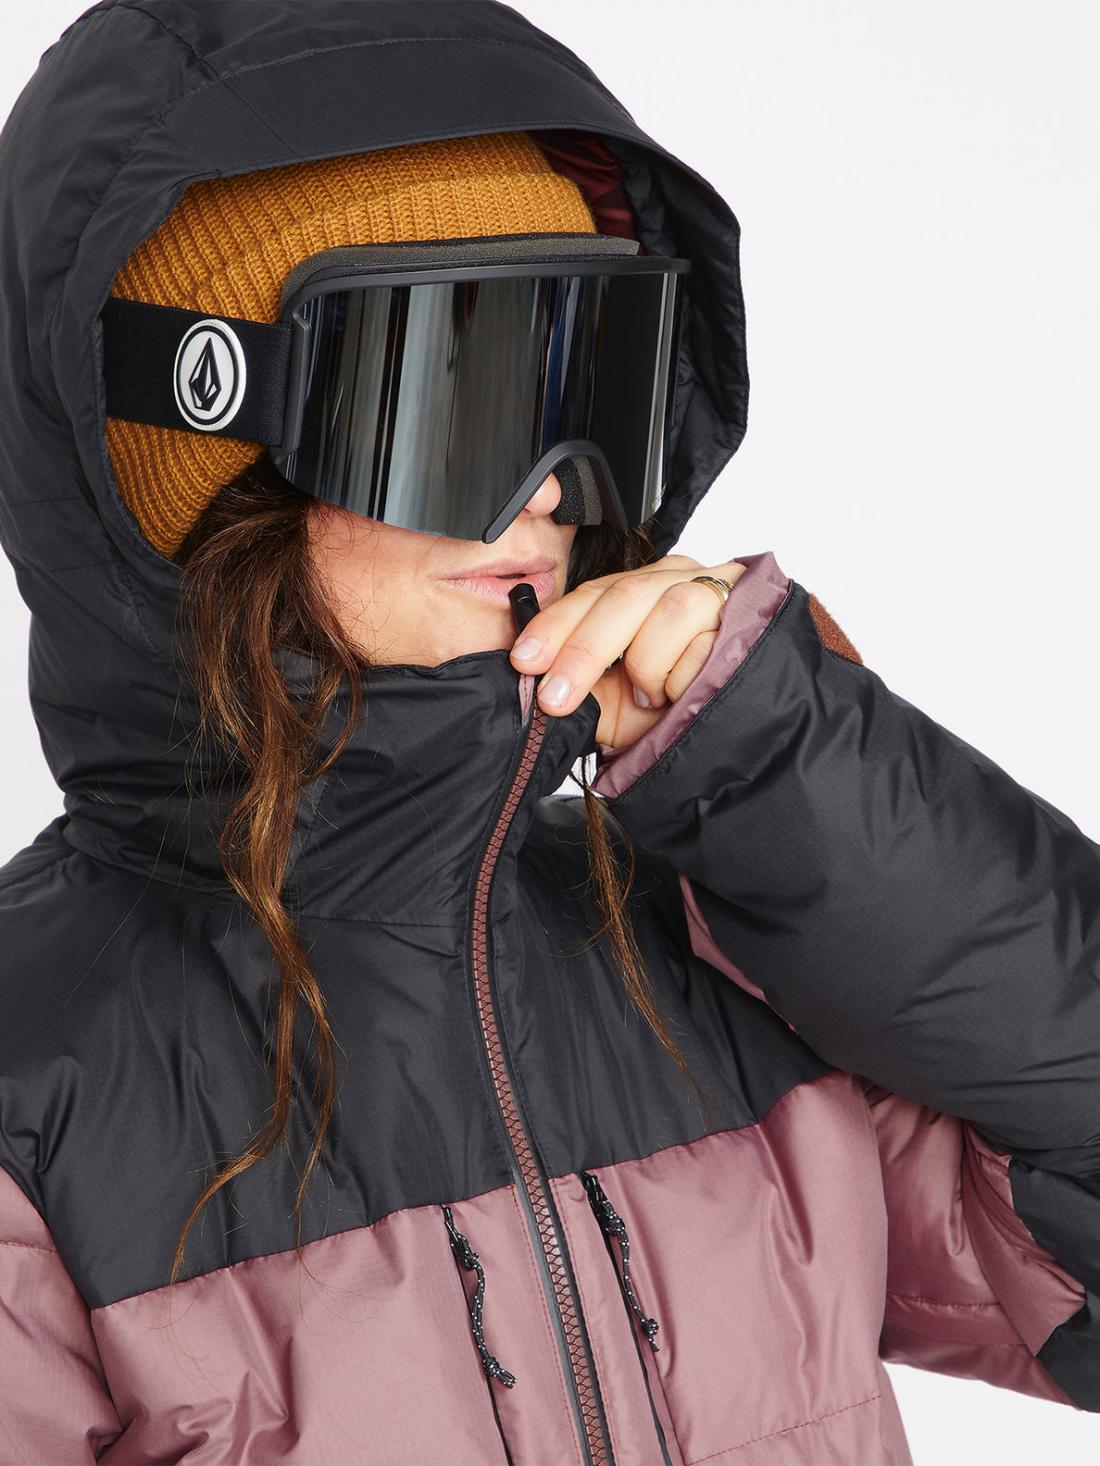 Chaqueta de snowboard Mujer Volcom Lifted Down Jacket - Rosewood | Chaquetas de snowboard Mujer | Snowboard Shop | Volcom Shop | surfdevils.com